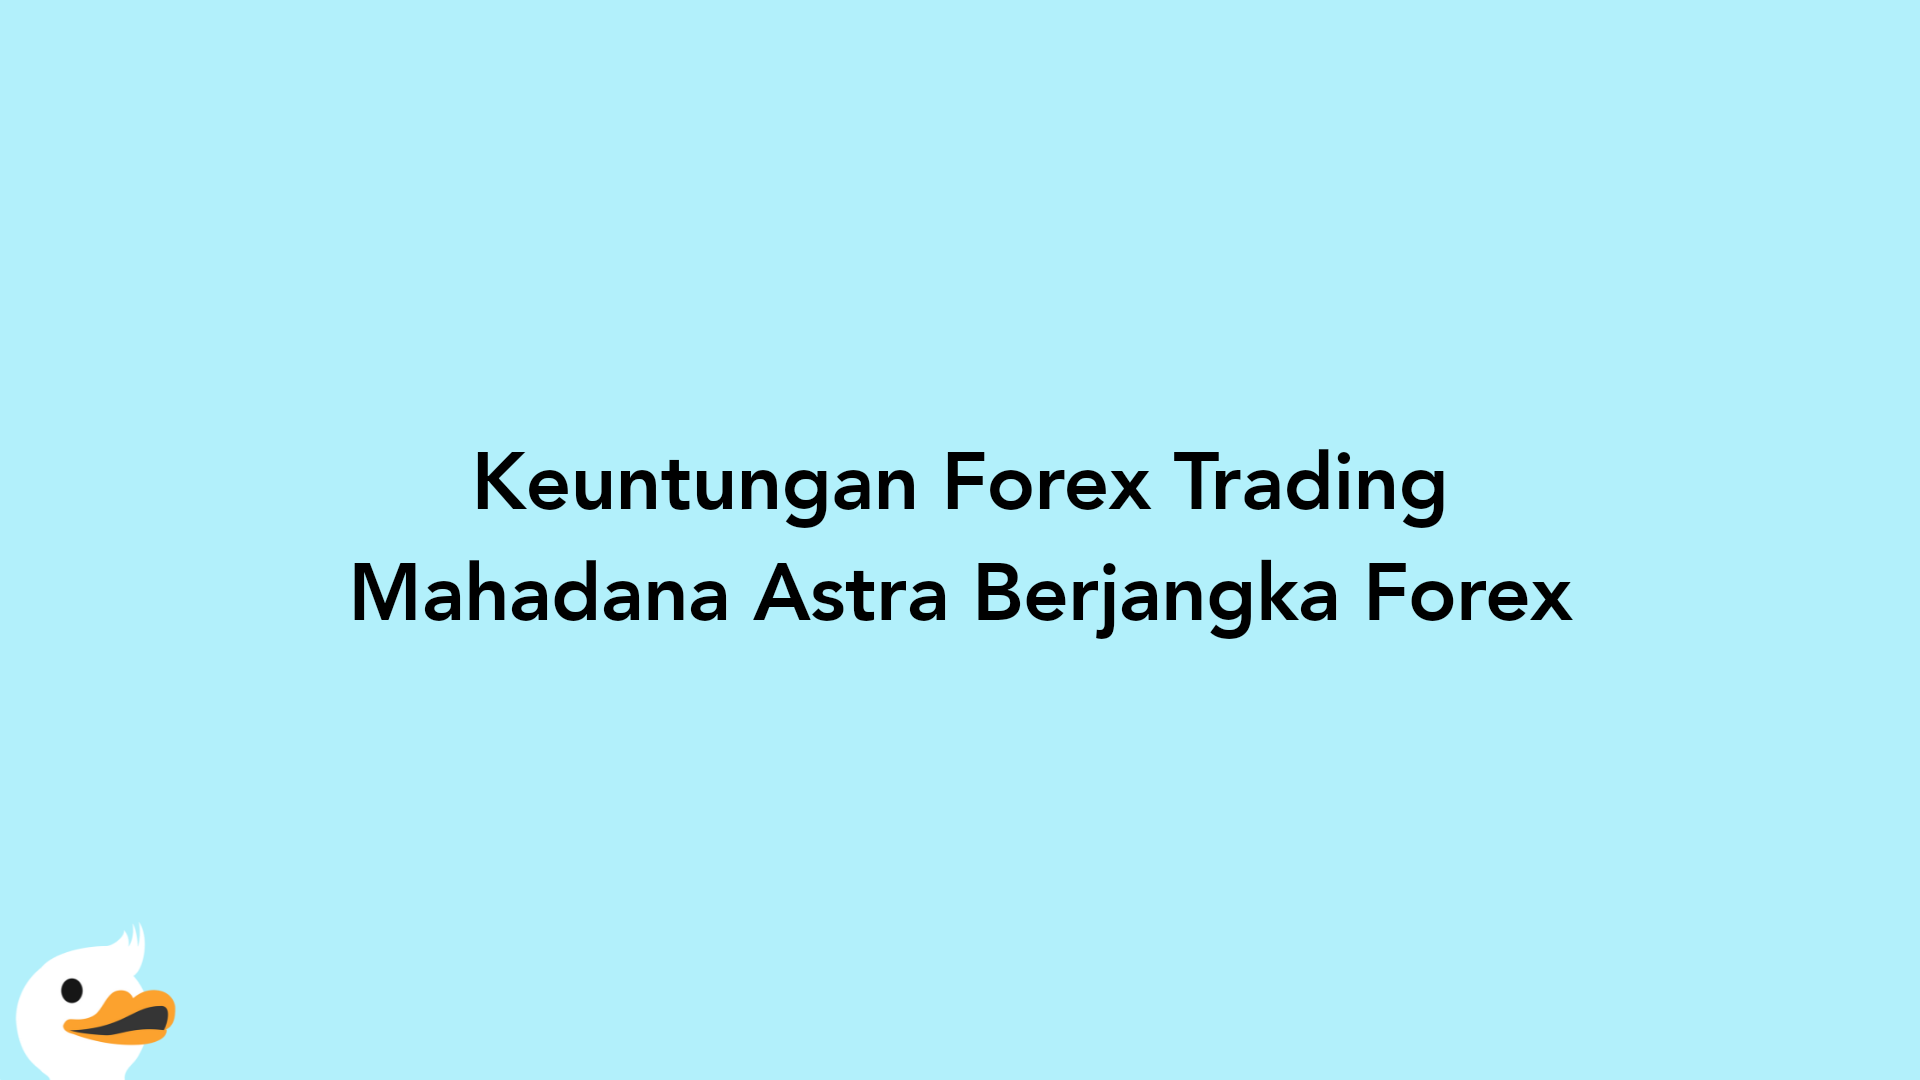 Keuntungan Forex Trading Mahadana Astra Berjangka Forex